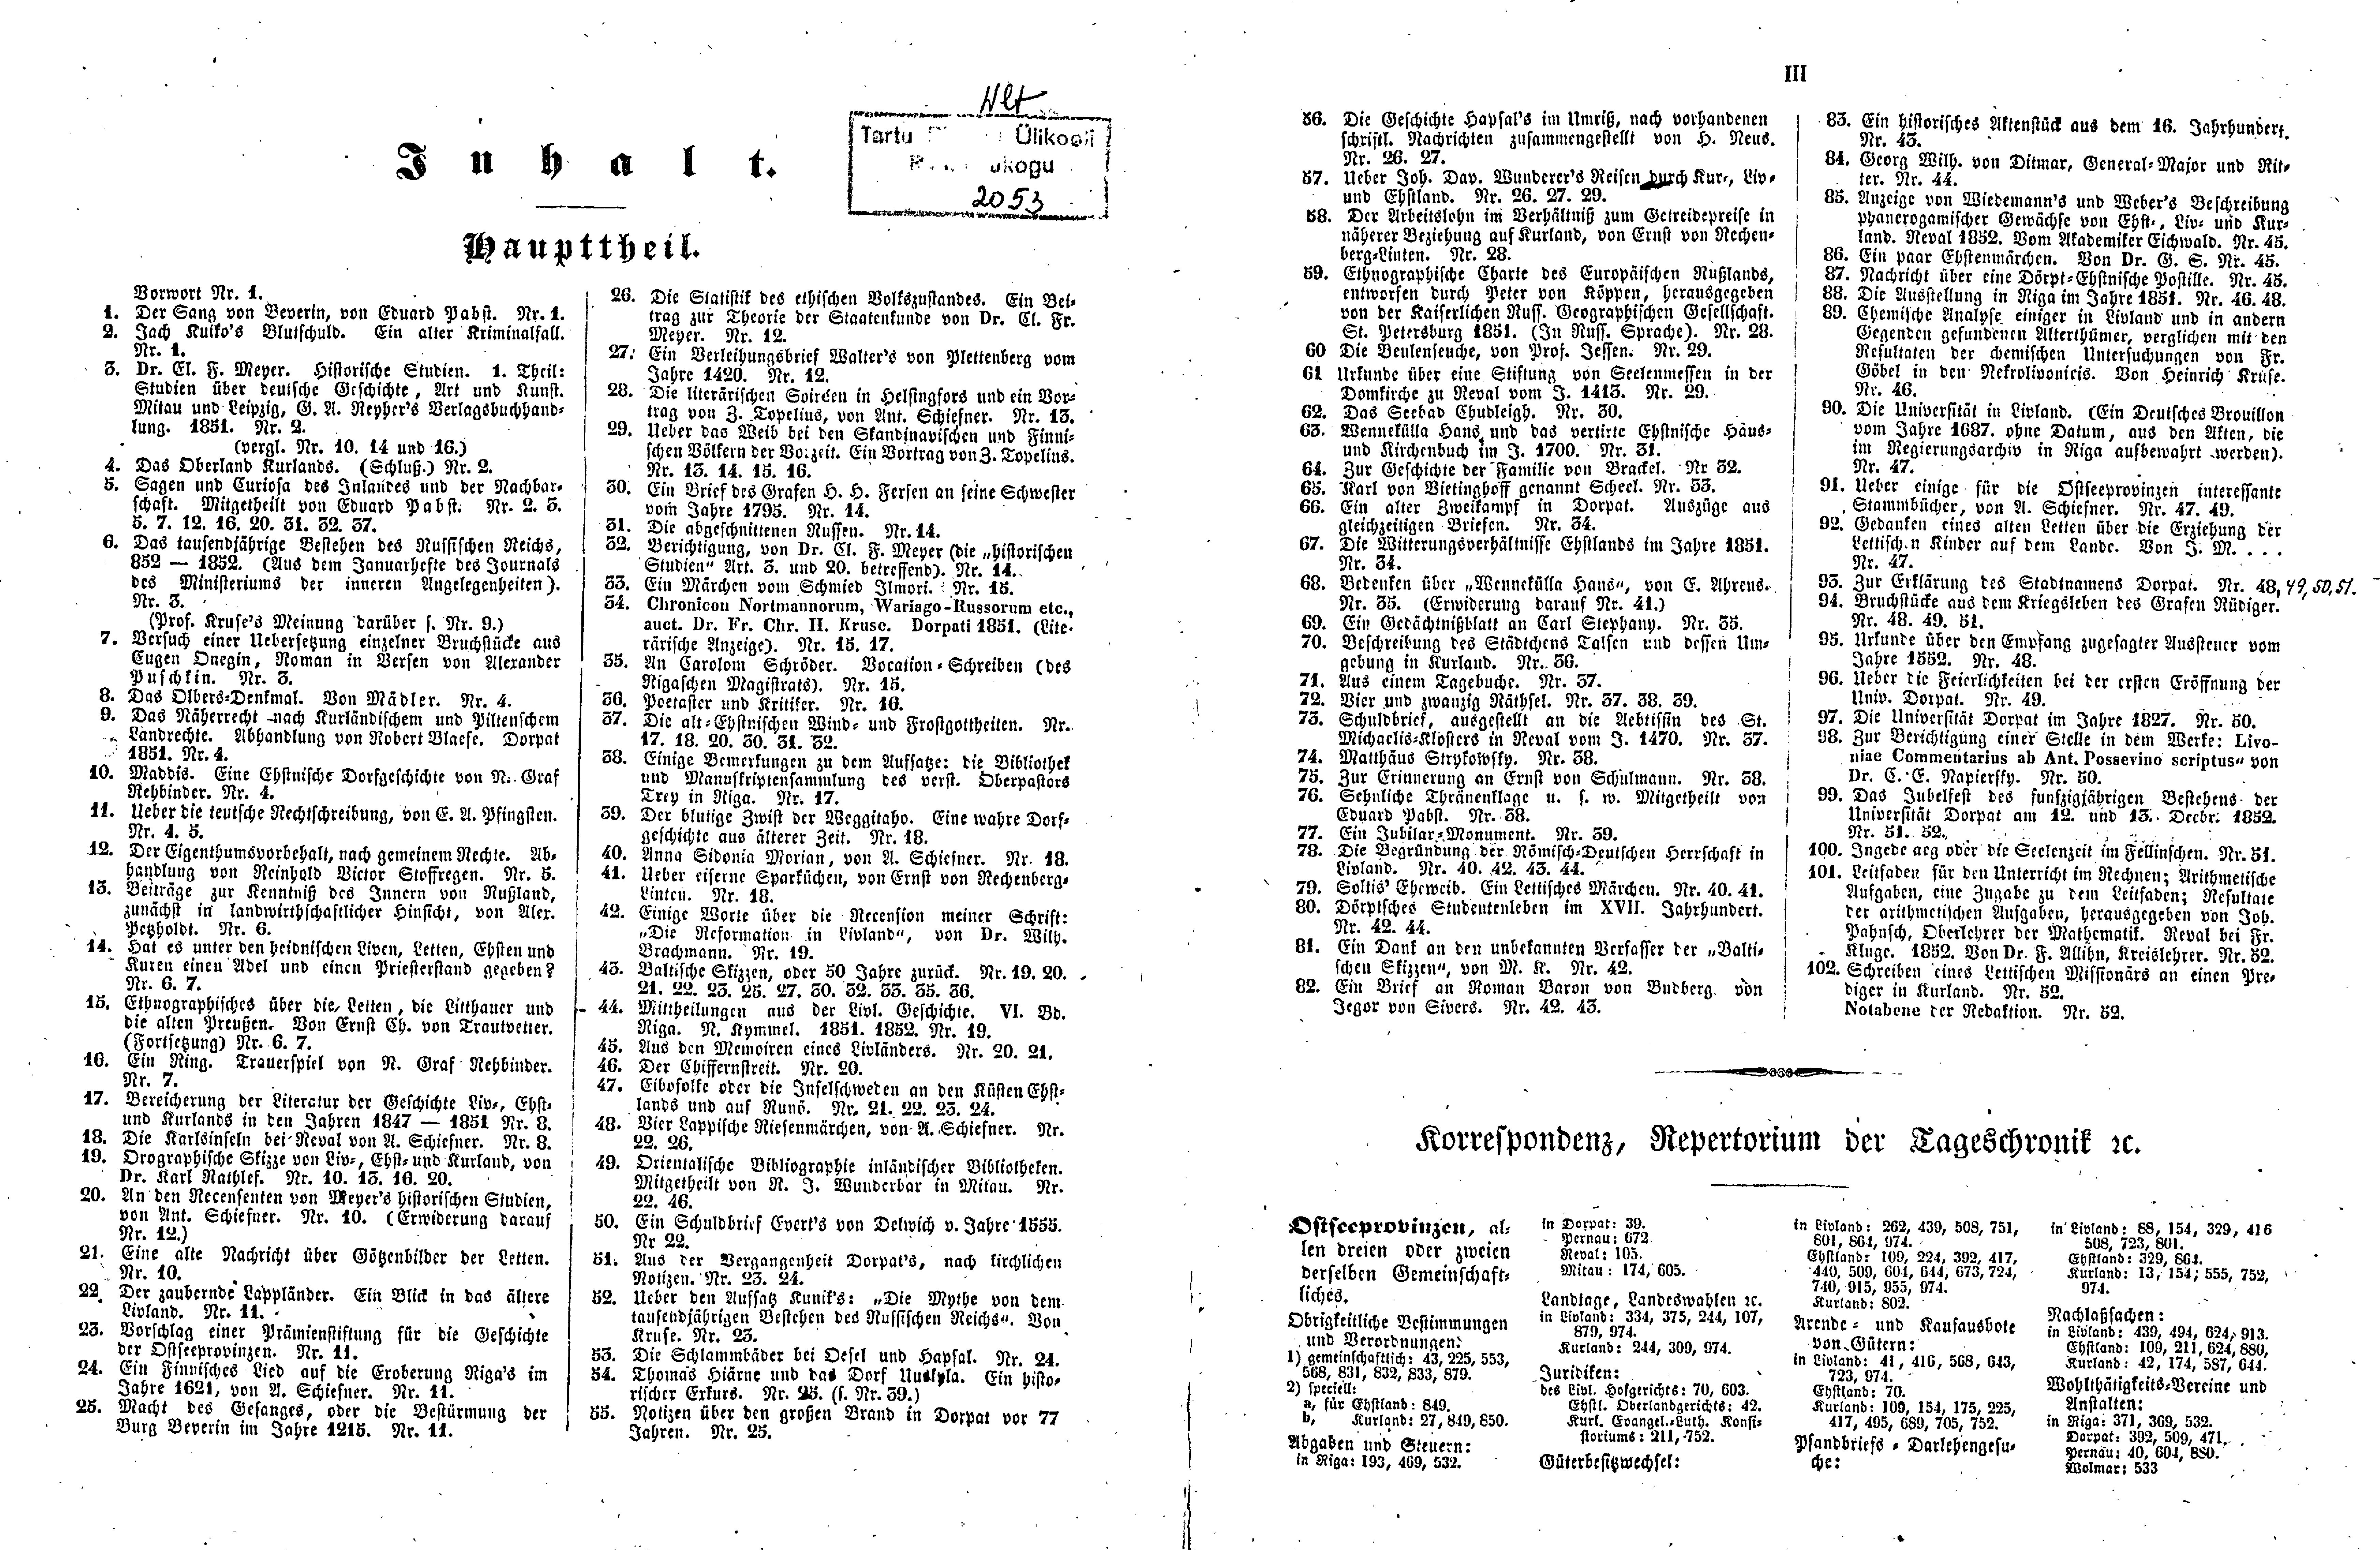 Das Inland [17] (1852) | 2. (II-III) Register